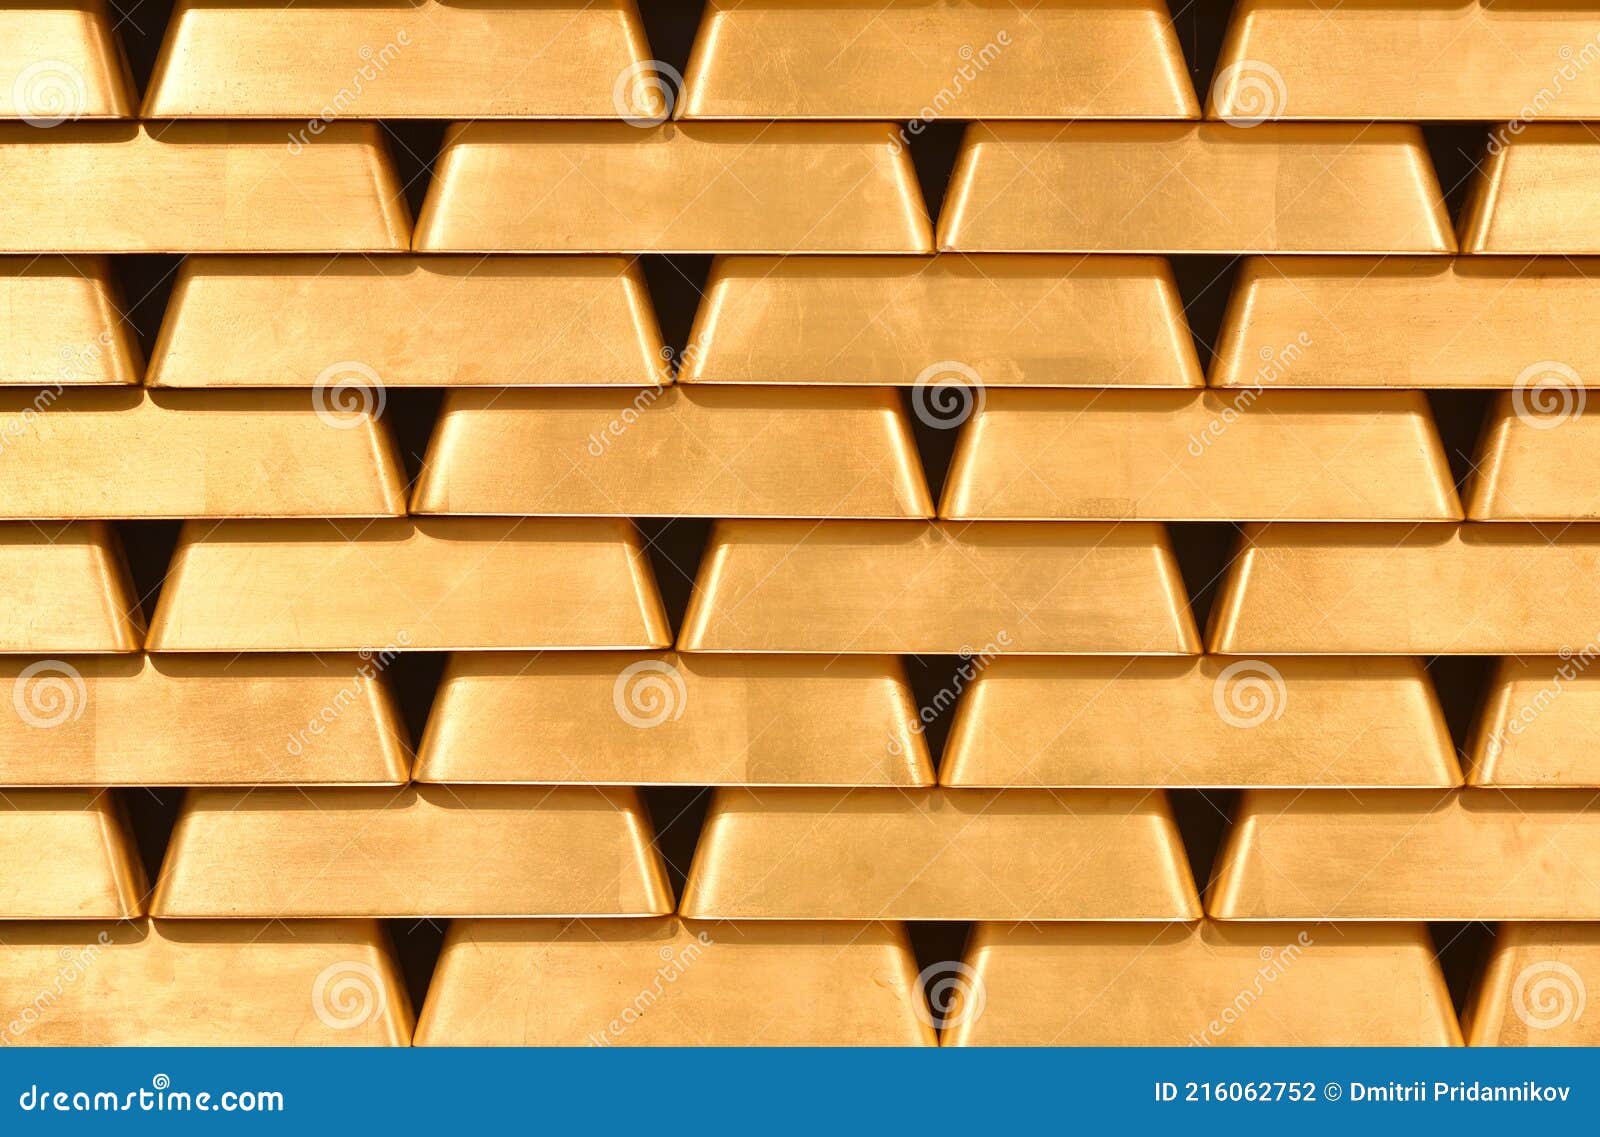 gold bullion wall texture. gold bullion background, pattern